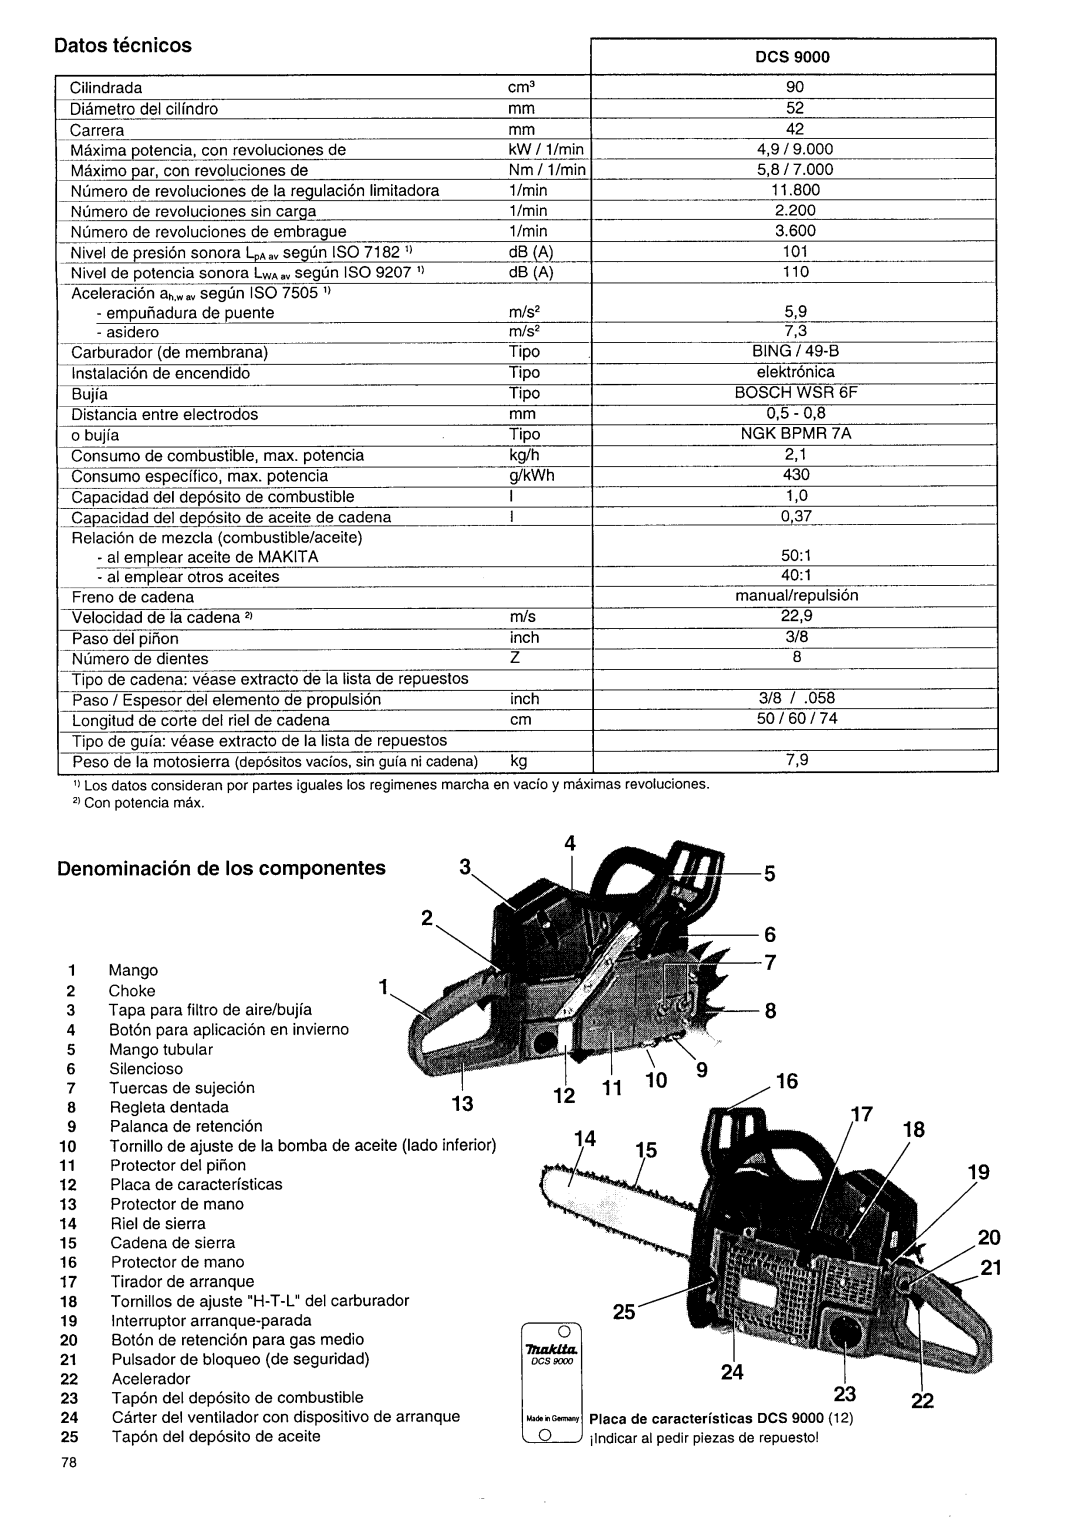 Makita DCS 9000 manual I I l o Y 12 l1, Datos tecnicos, Denominacion de 10s componentes 3 